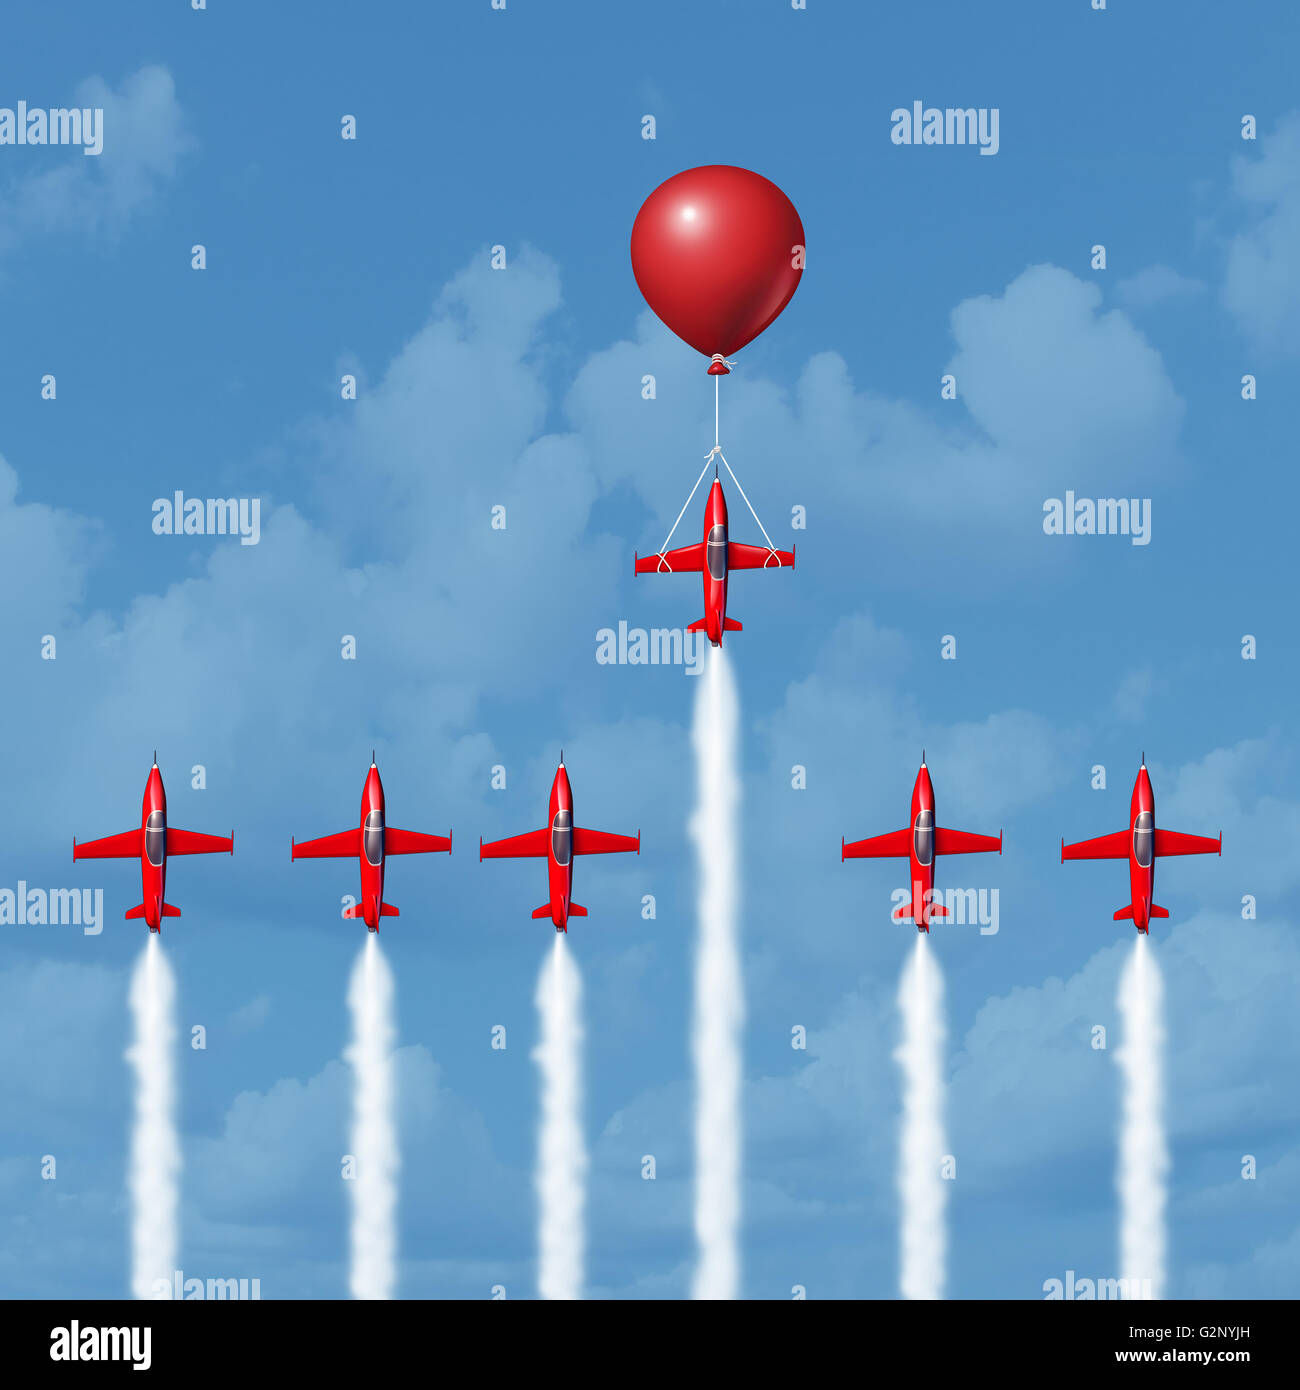 Business-Tools und erfolgreiche Strategiekonzept zu gewinnen, als eine Gruppe von wettbewerbsfähigen Flugzeuge racing mit einer Person, die durch einen Ballon als Sieger als 3D Illustration geholfen ist. Stockfoto